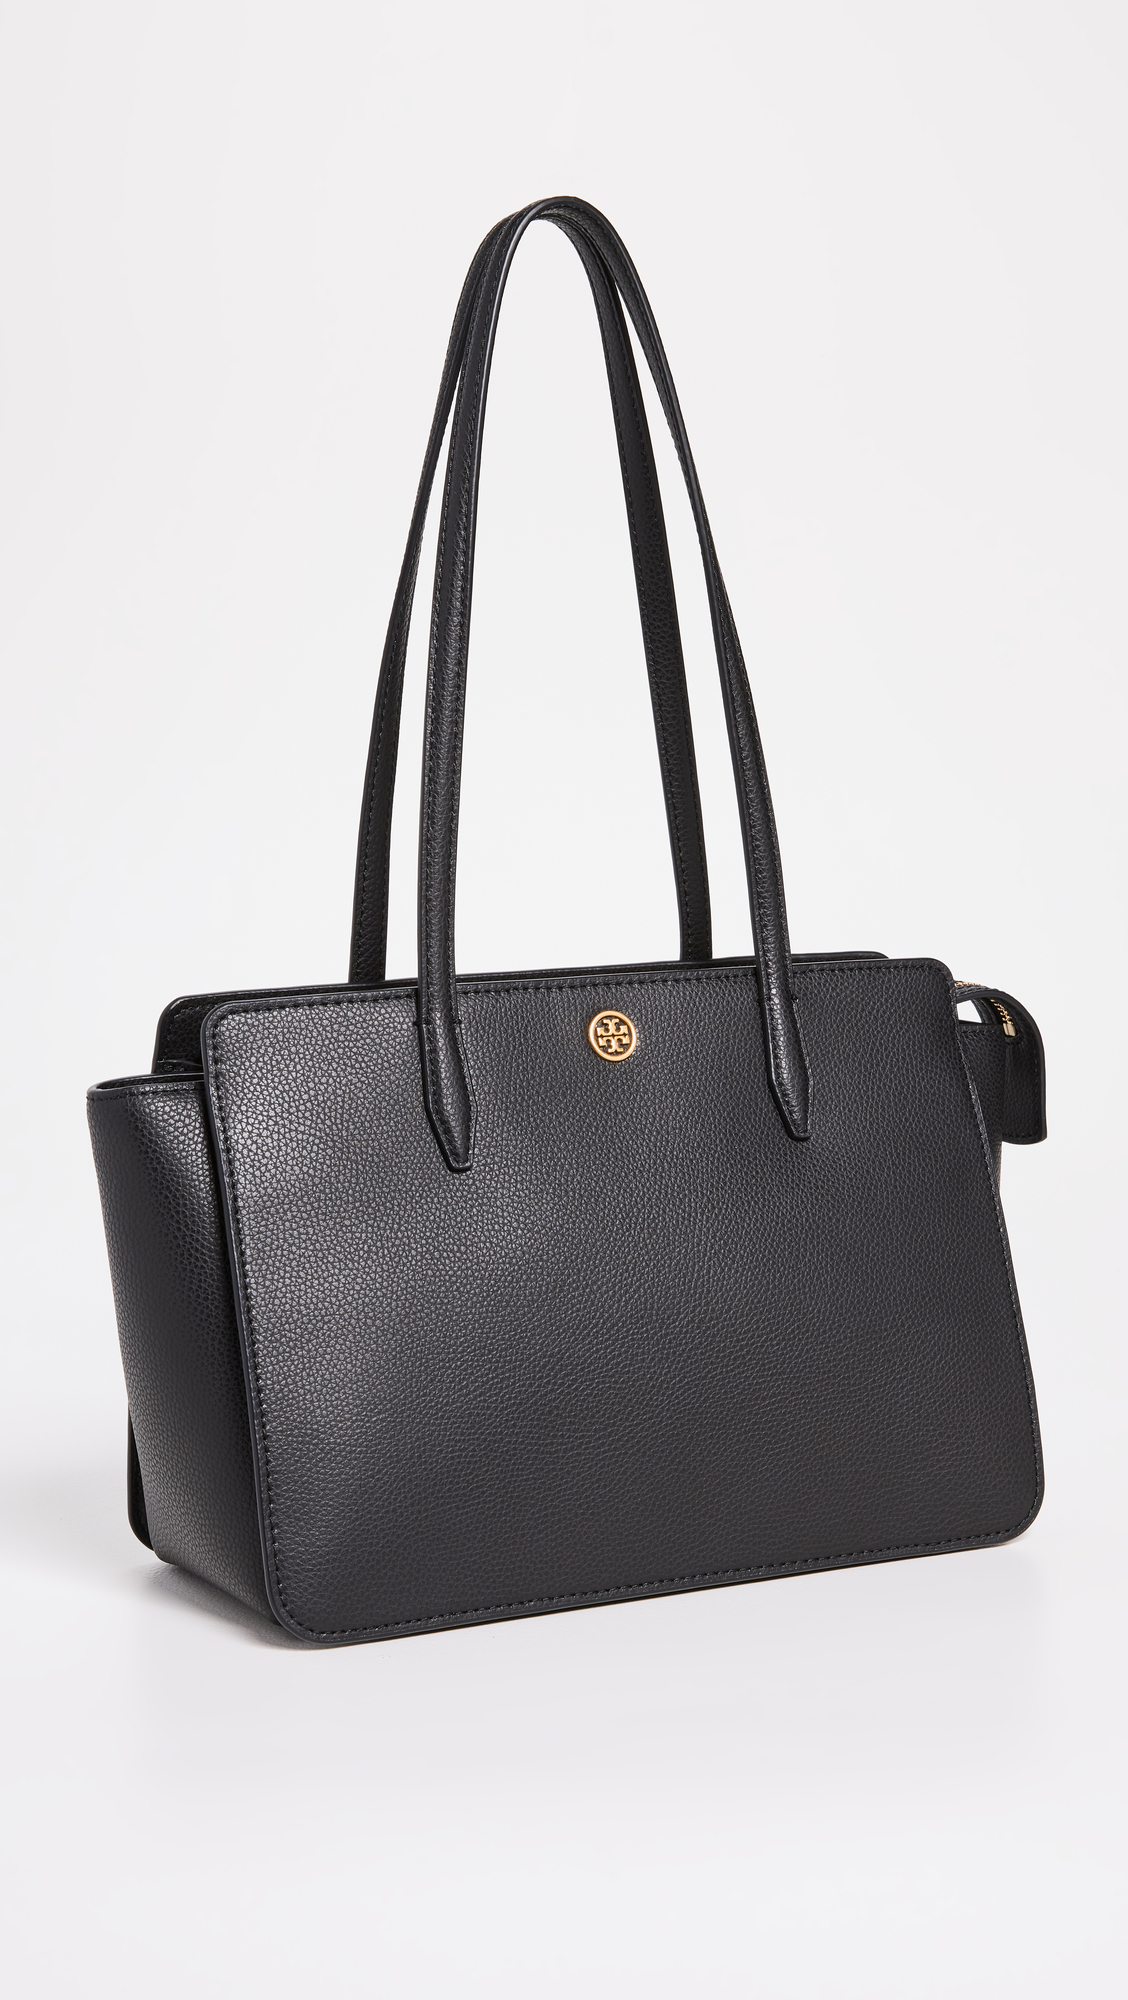 shopbop designer bags on sale 307448 1684962799493